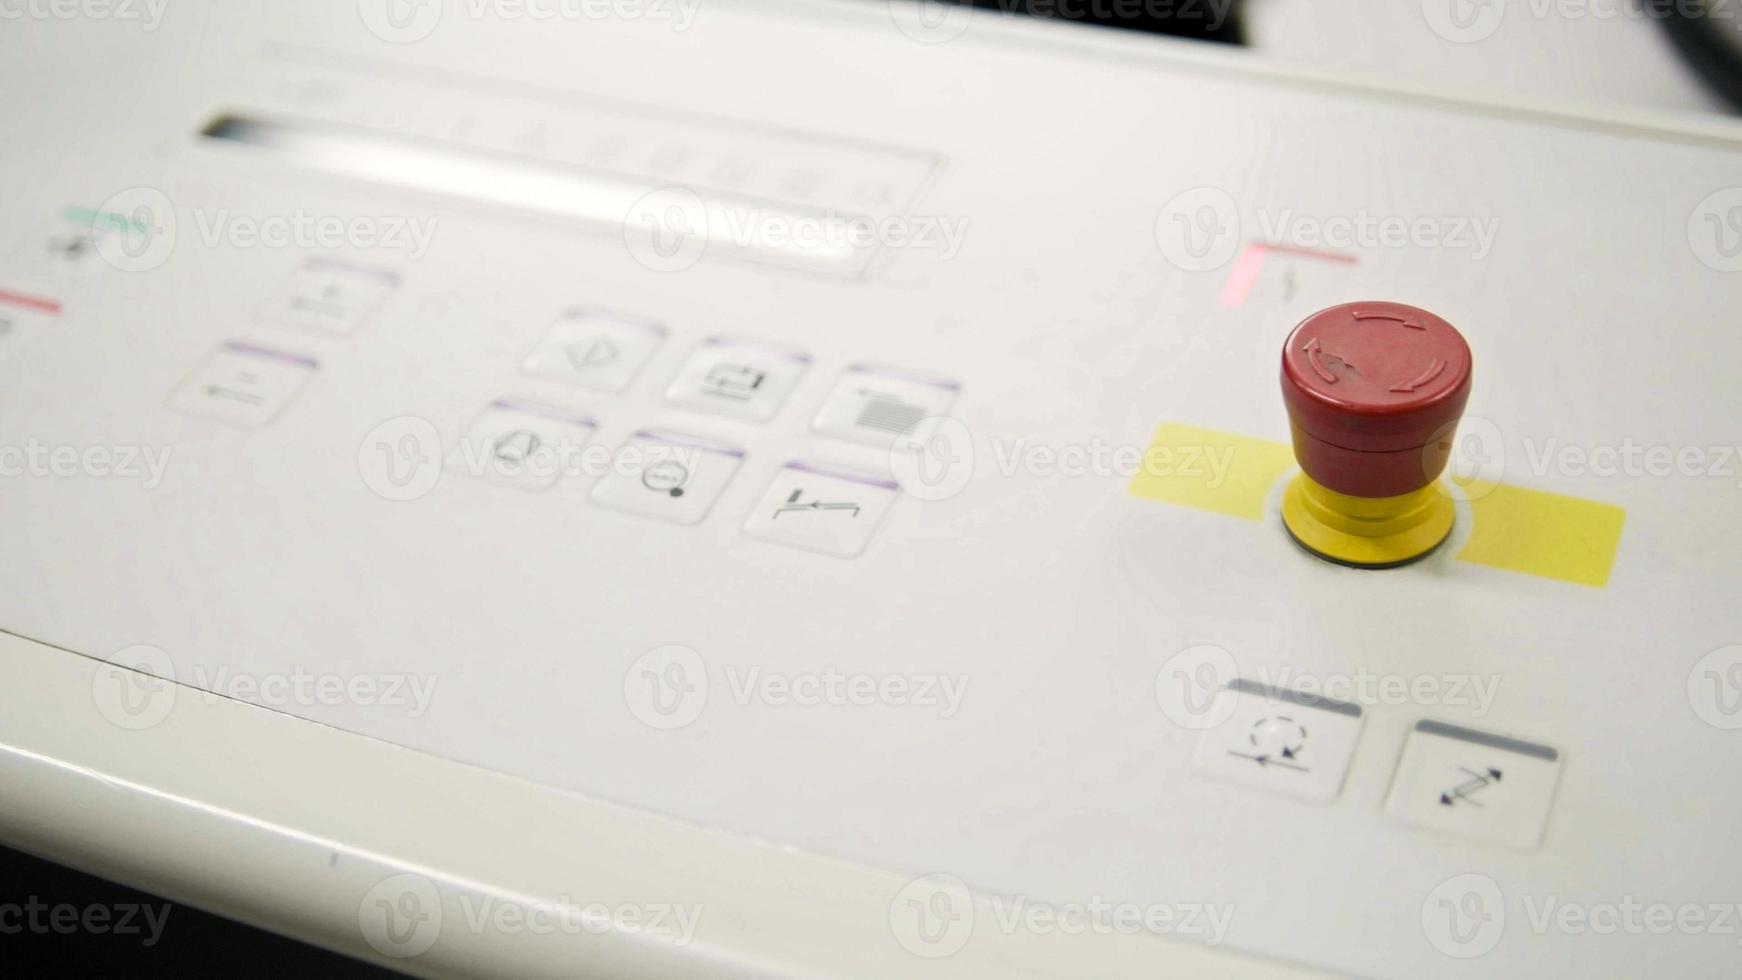 Falzmaschine in der Druckpolygraphenindustrie - roter Knopf und Förderband, Nahaufnahme foto